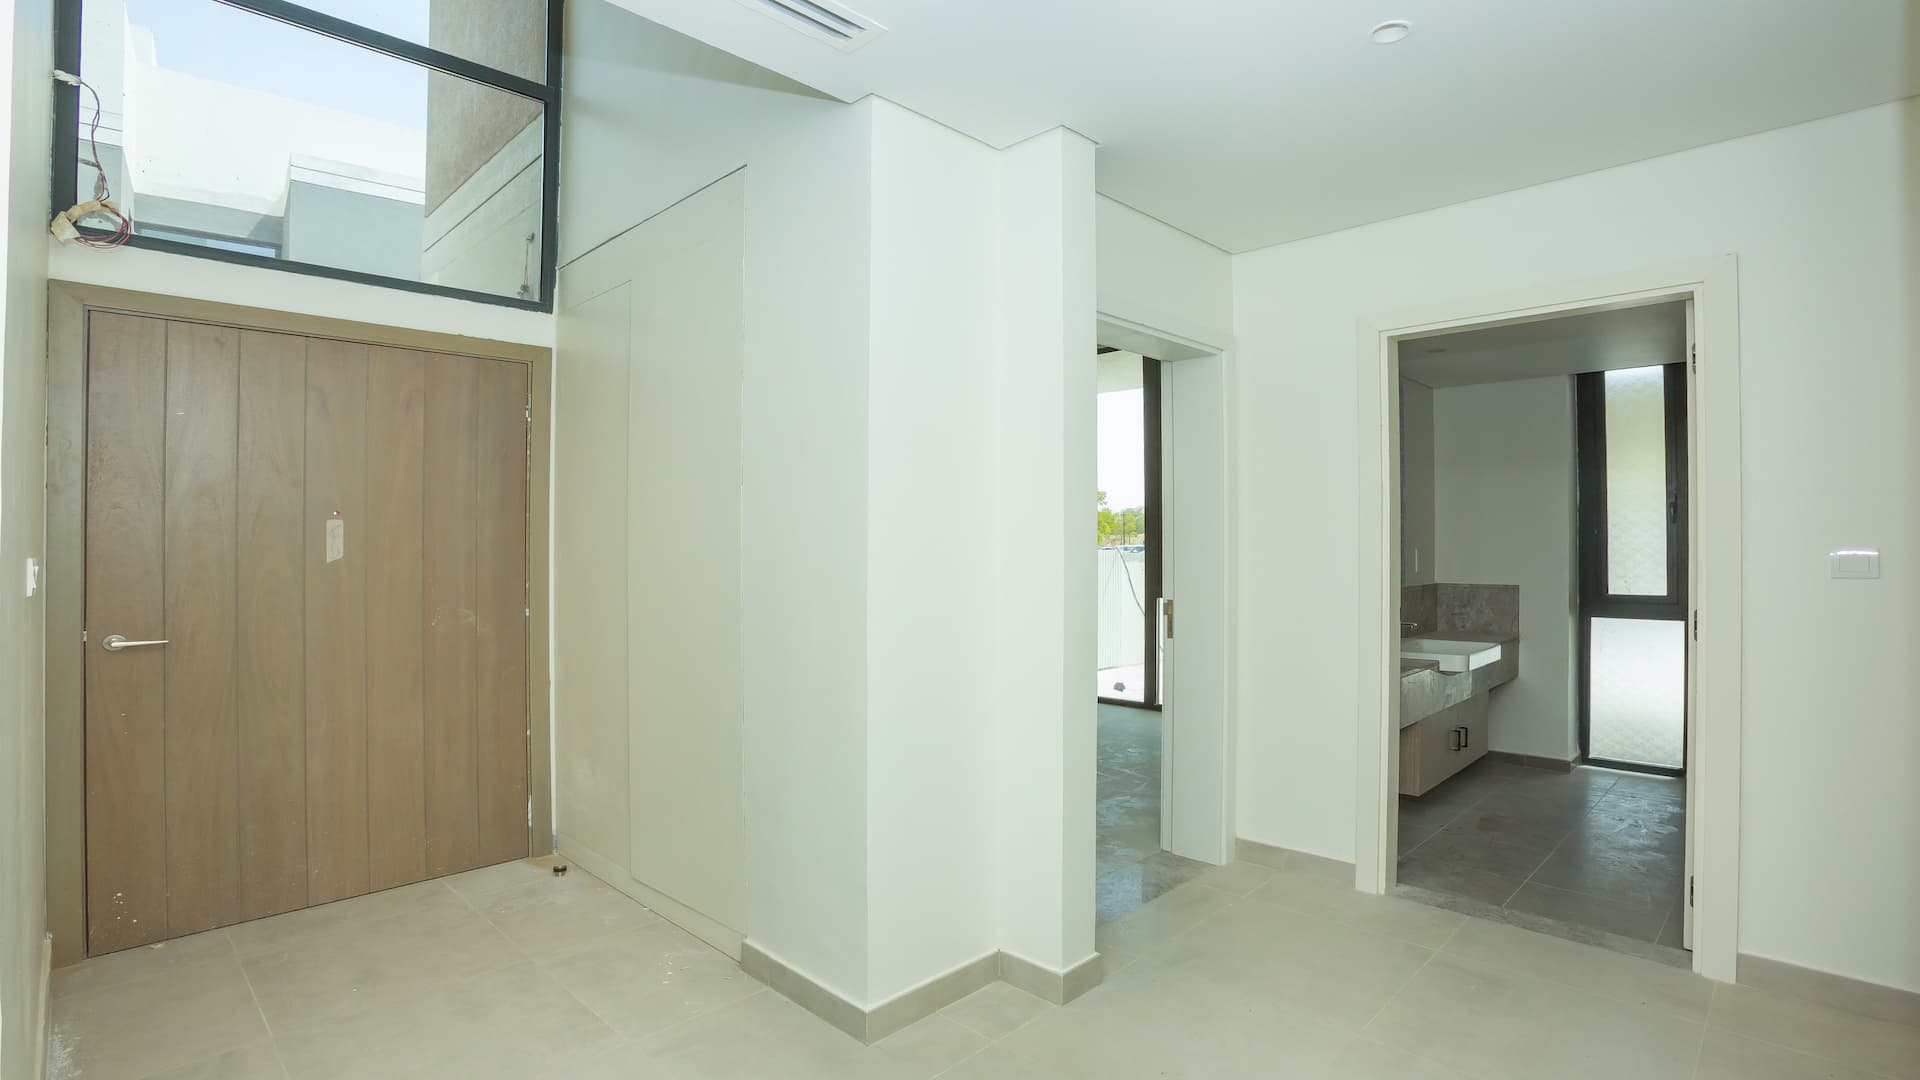 4 Bedroom Villa For Sale Club Villas At Dubai Hills Lp09158 13a0d8a1a8cd0f00.jpg